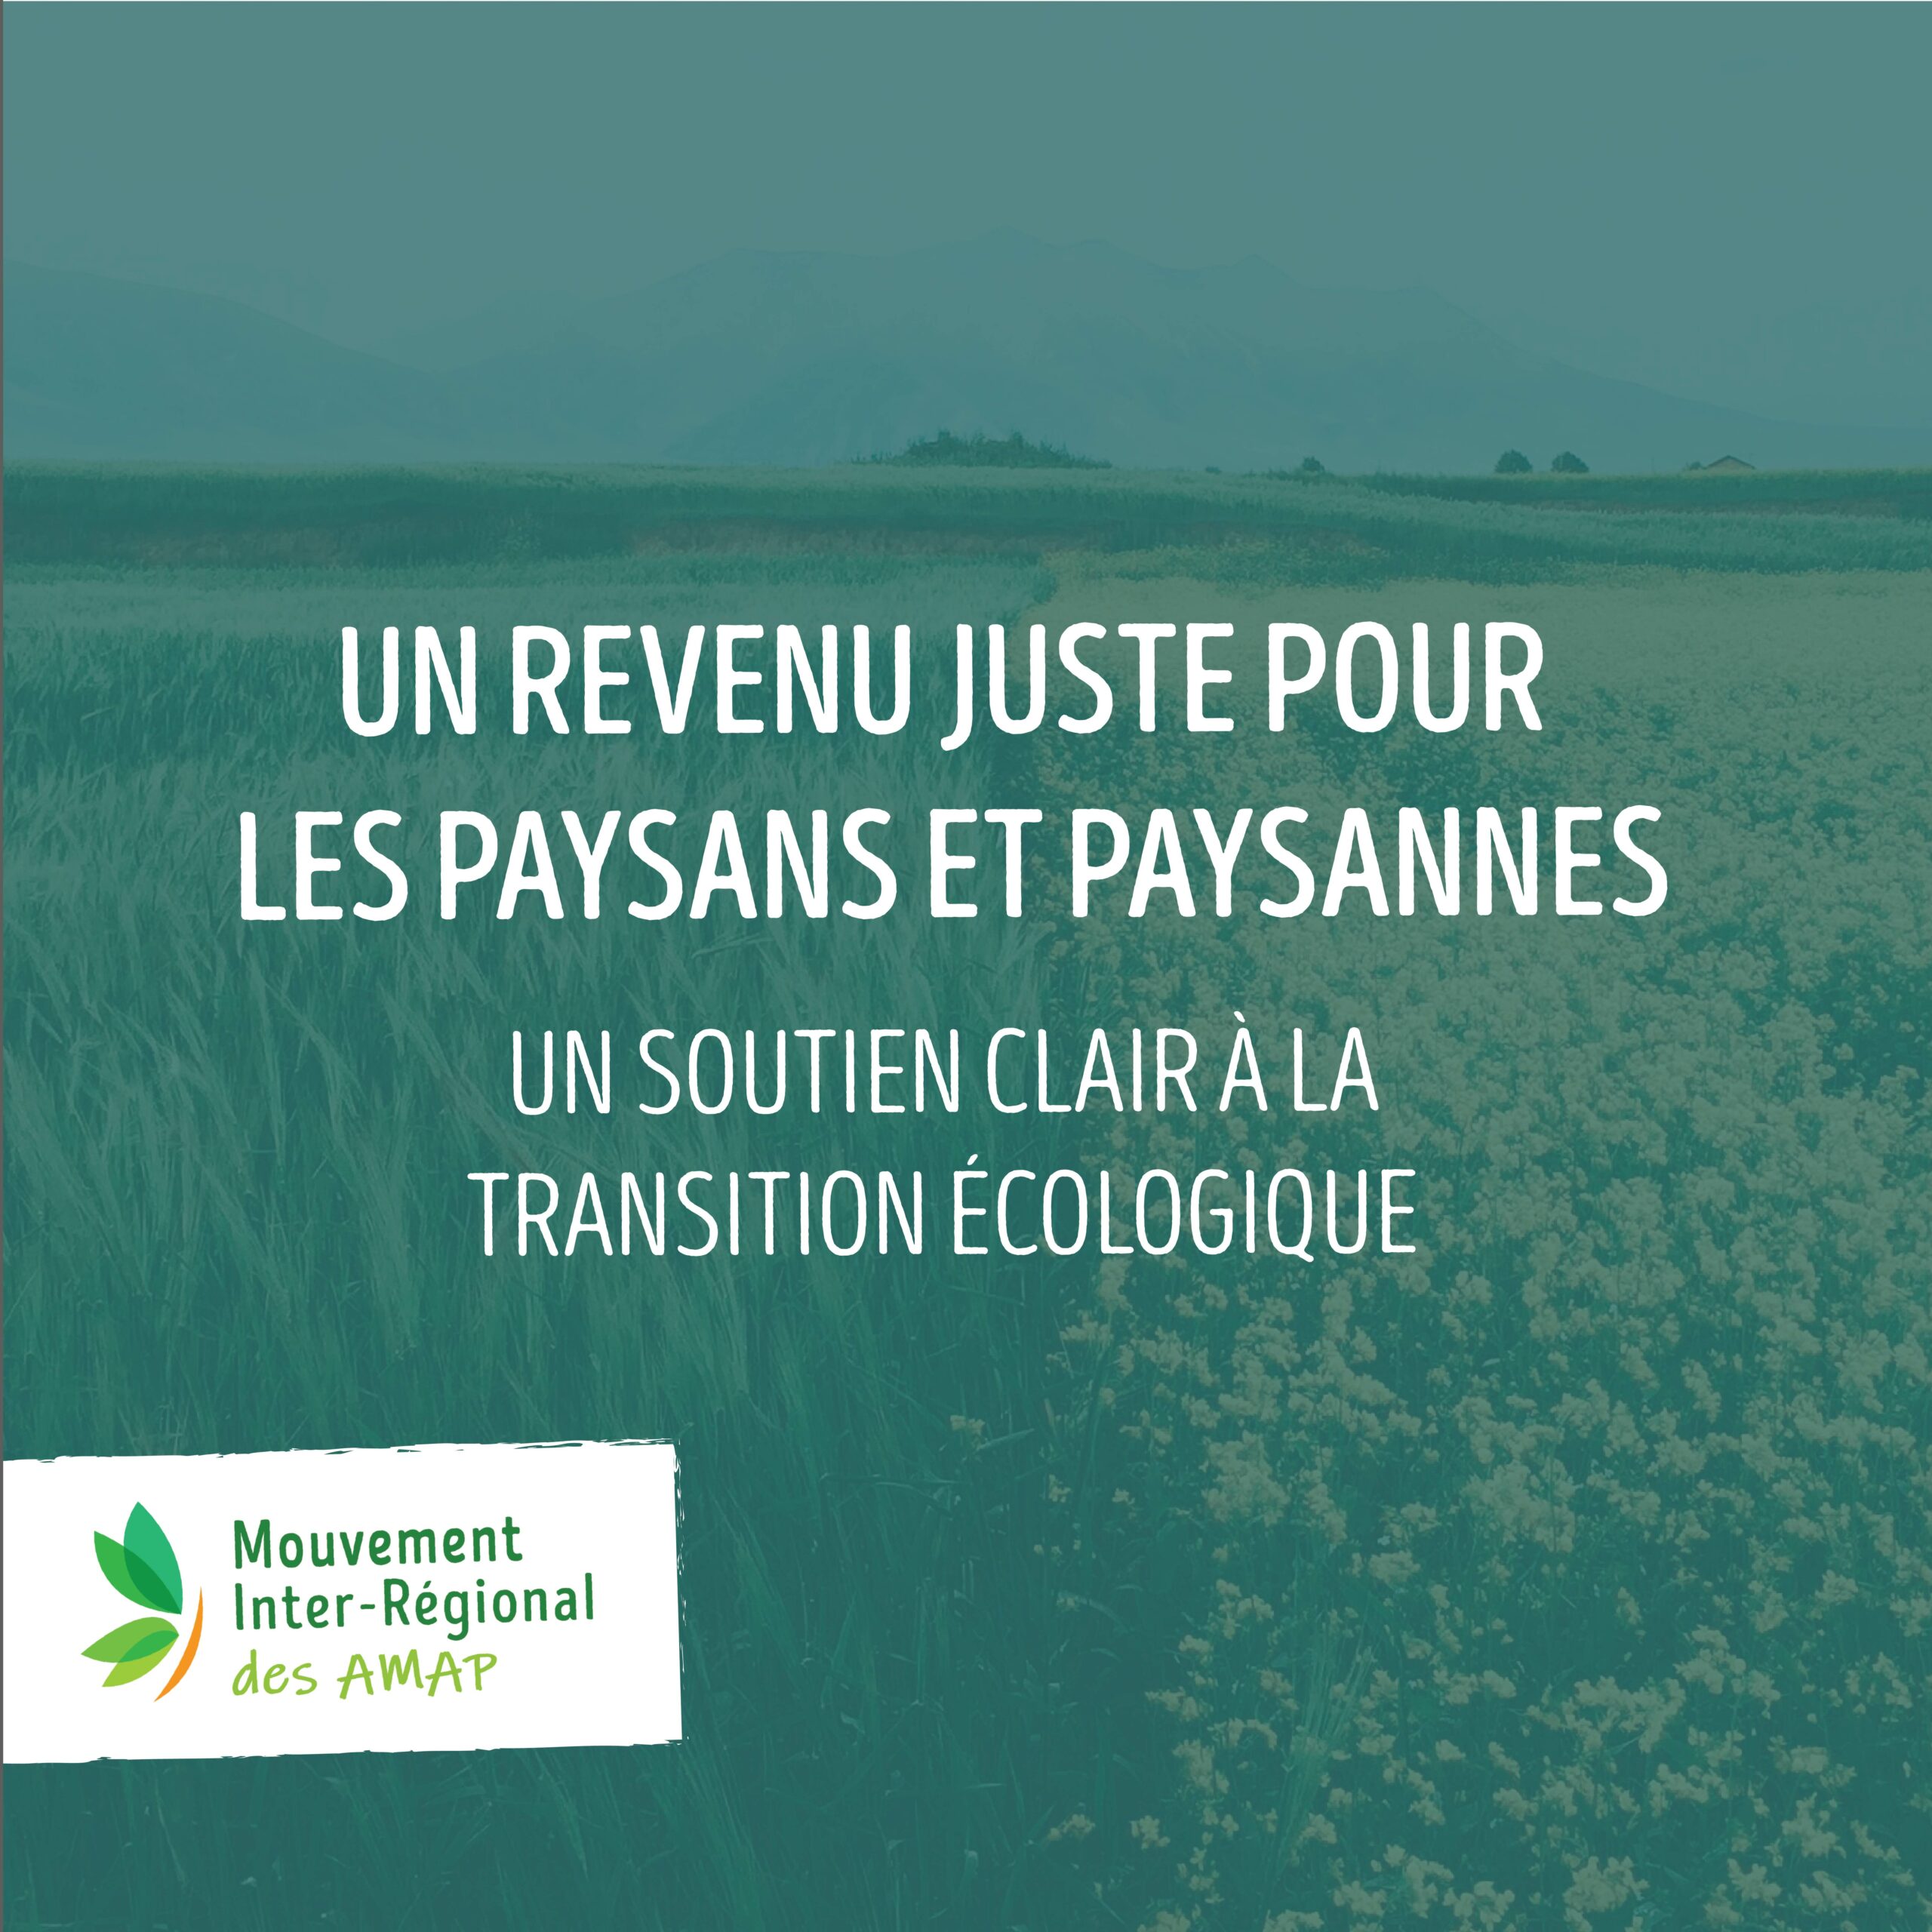 Un revenu juste pour les paysan·nes, un soutien clair à la transition écologique !